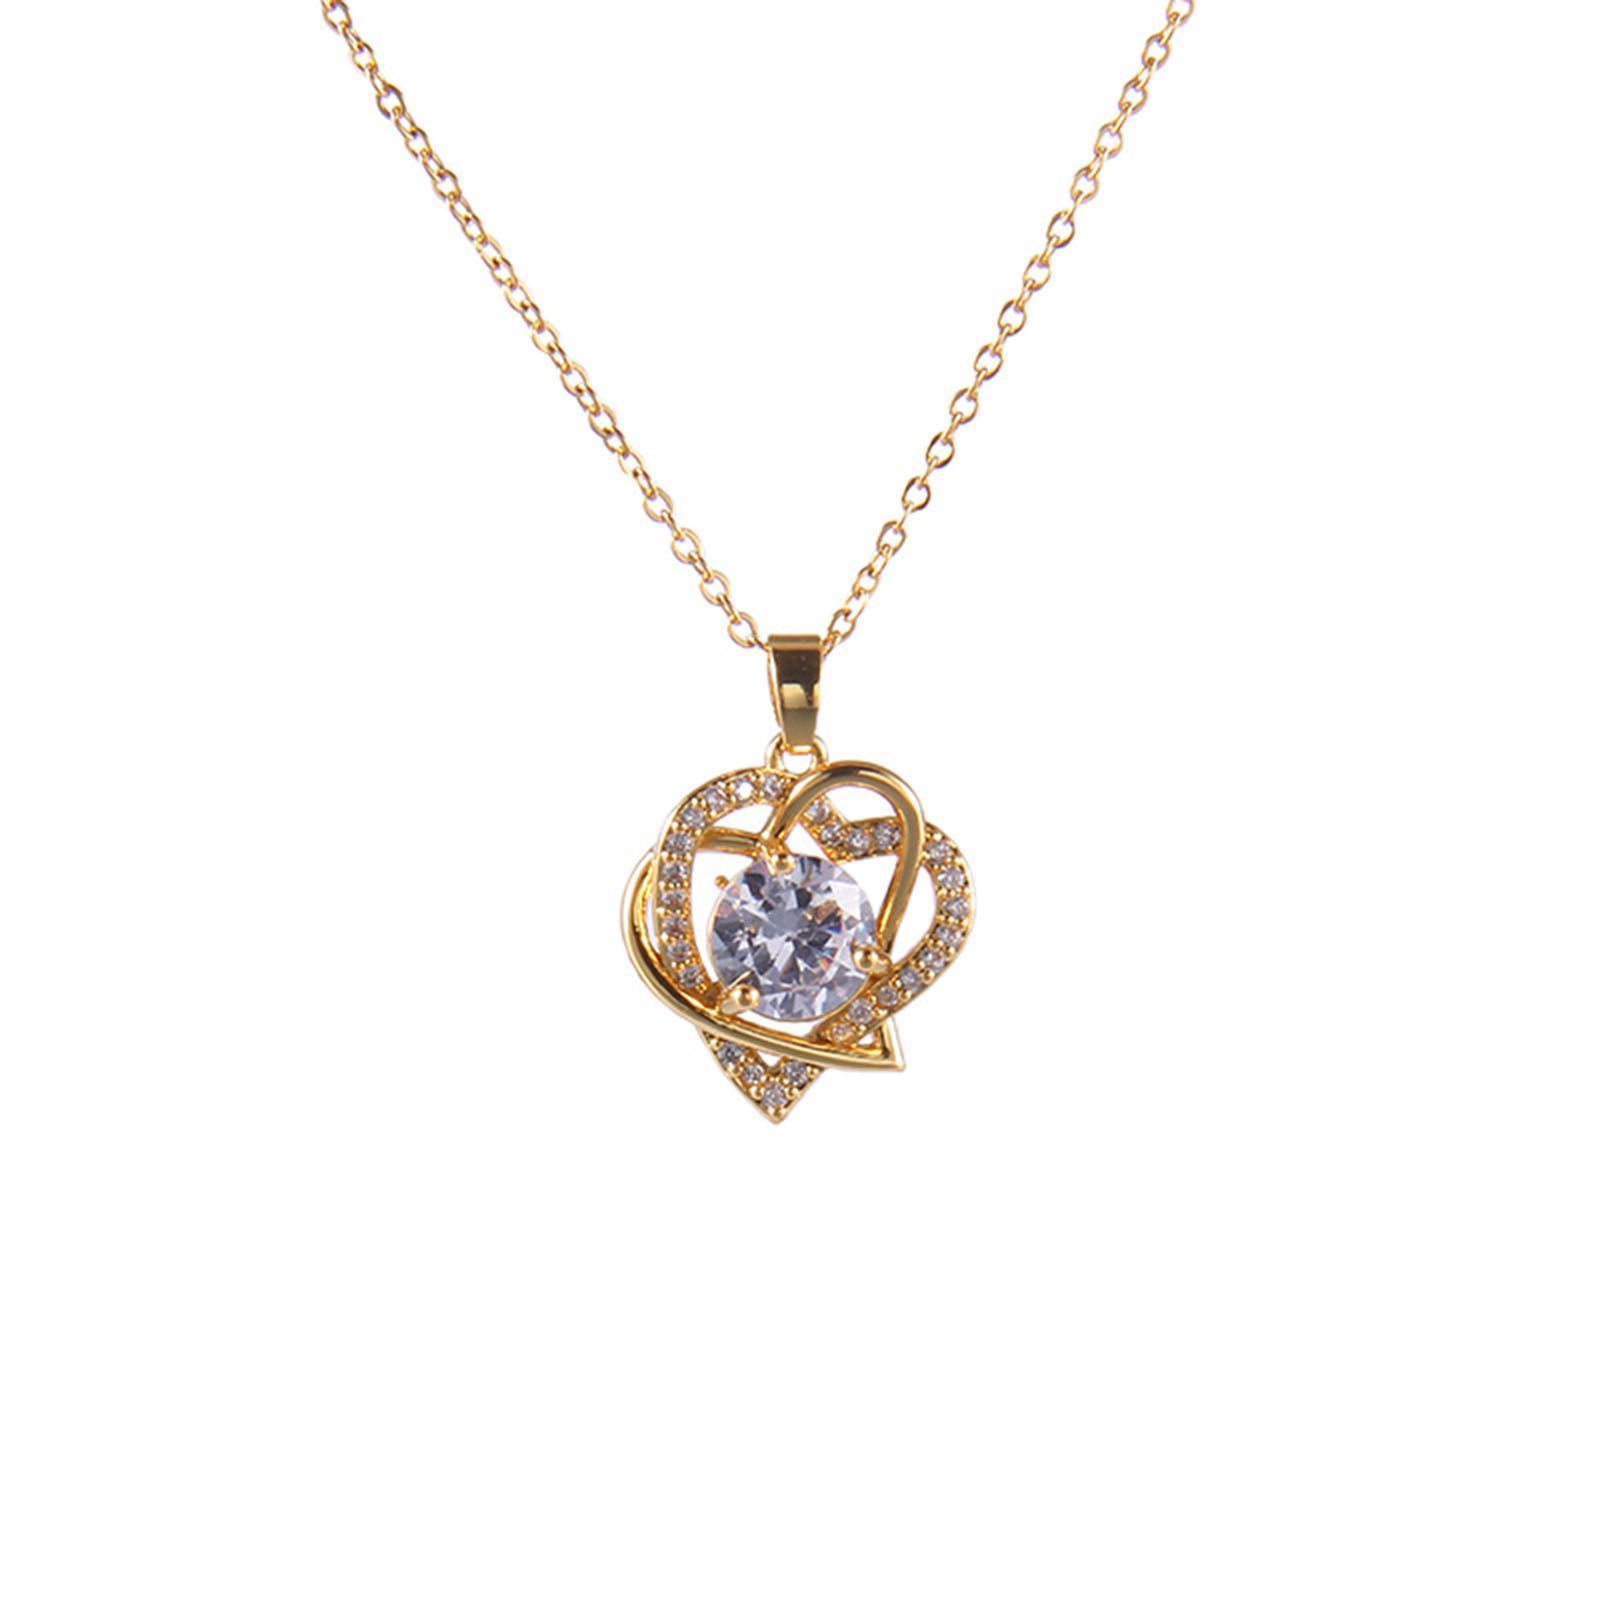 Bild von Valentinstag-Halskette aus Edelstahl und Kupfer, vergoldetes Herz, mehrfarbig, Zirkonia, 40 cm lang